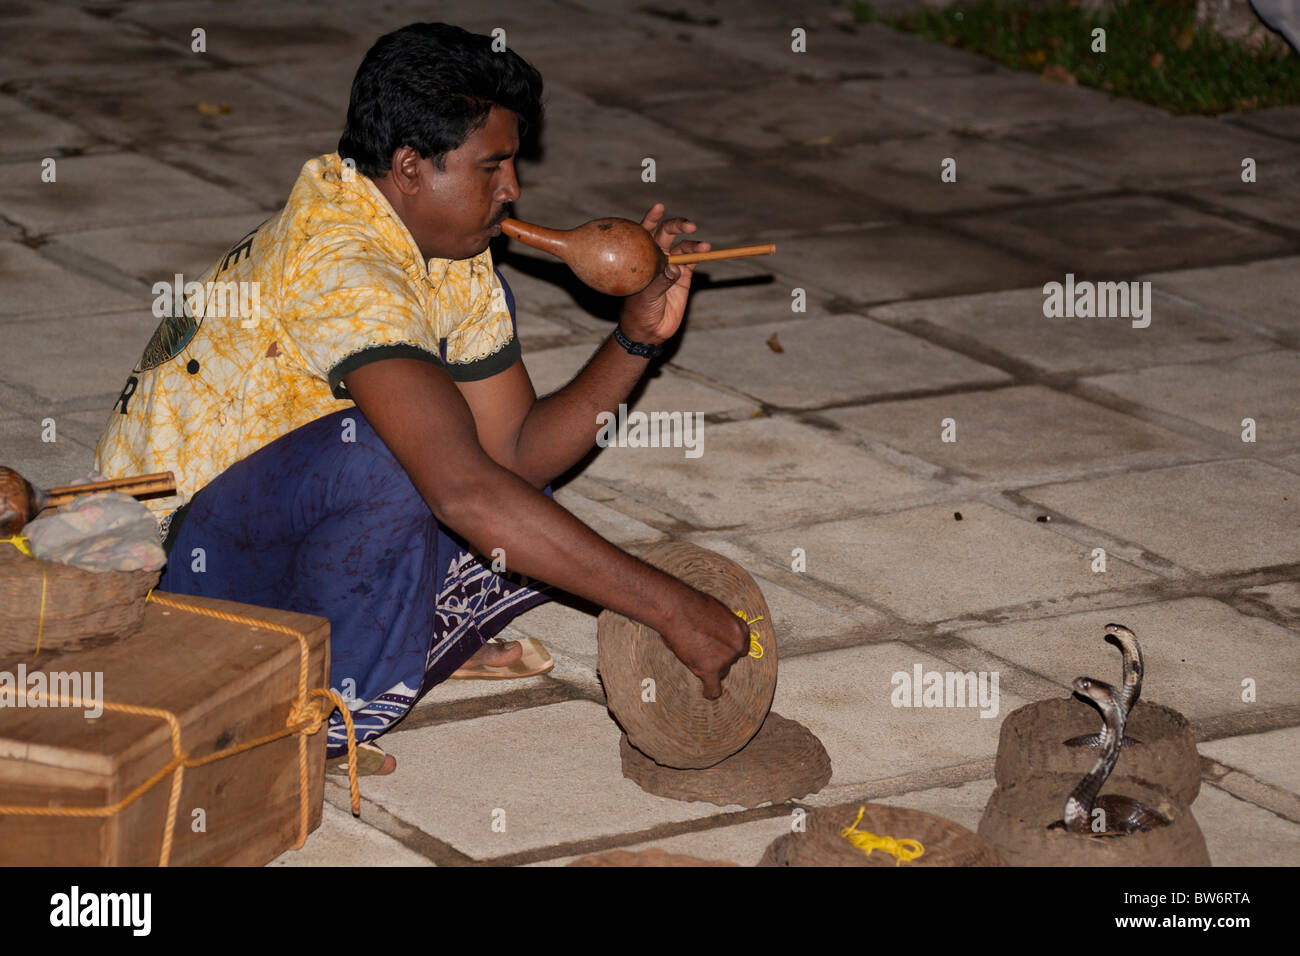 Snake charmer charming cobras, Sri Lanka Stock Photo